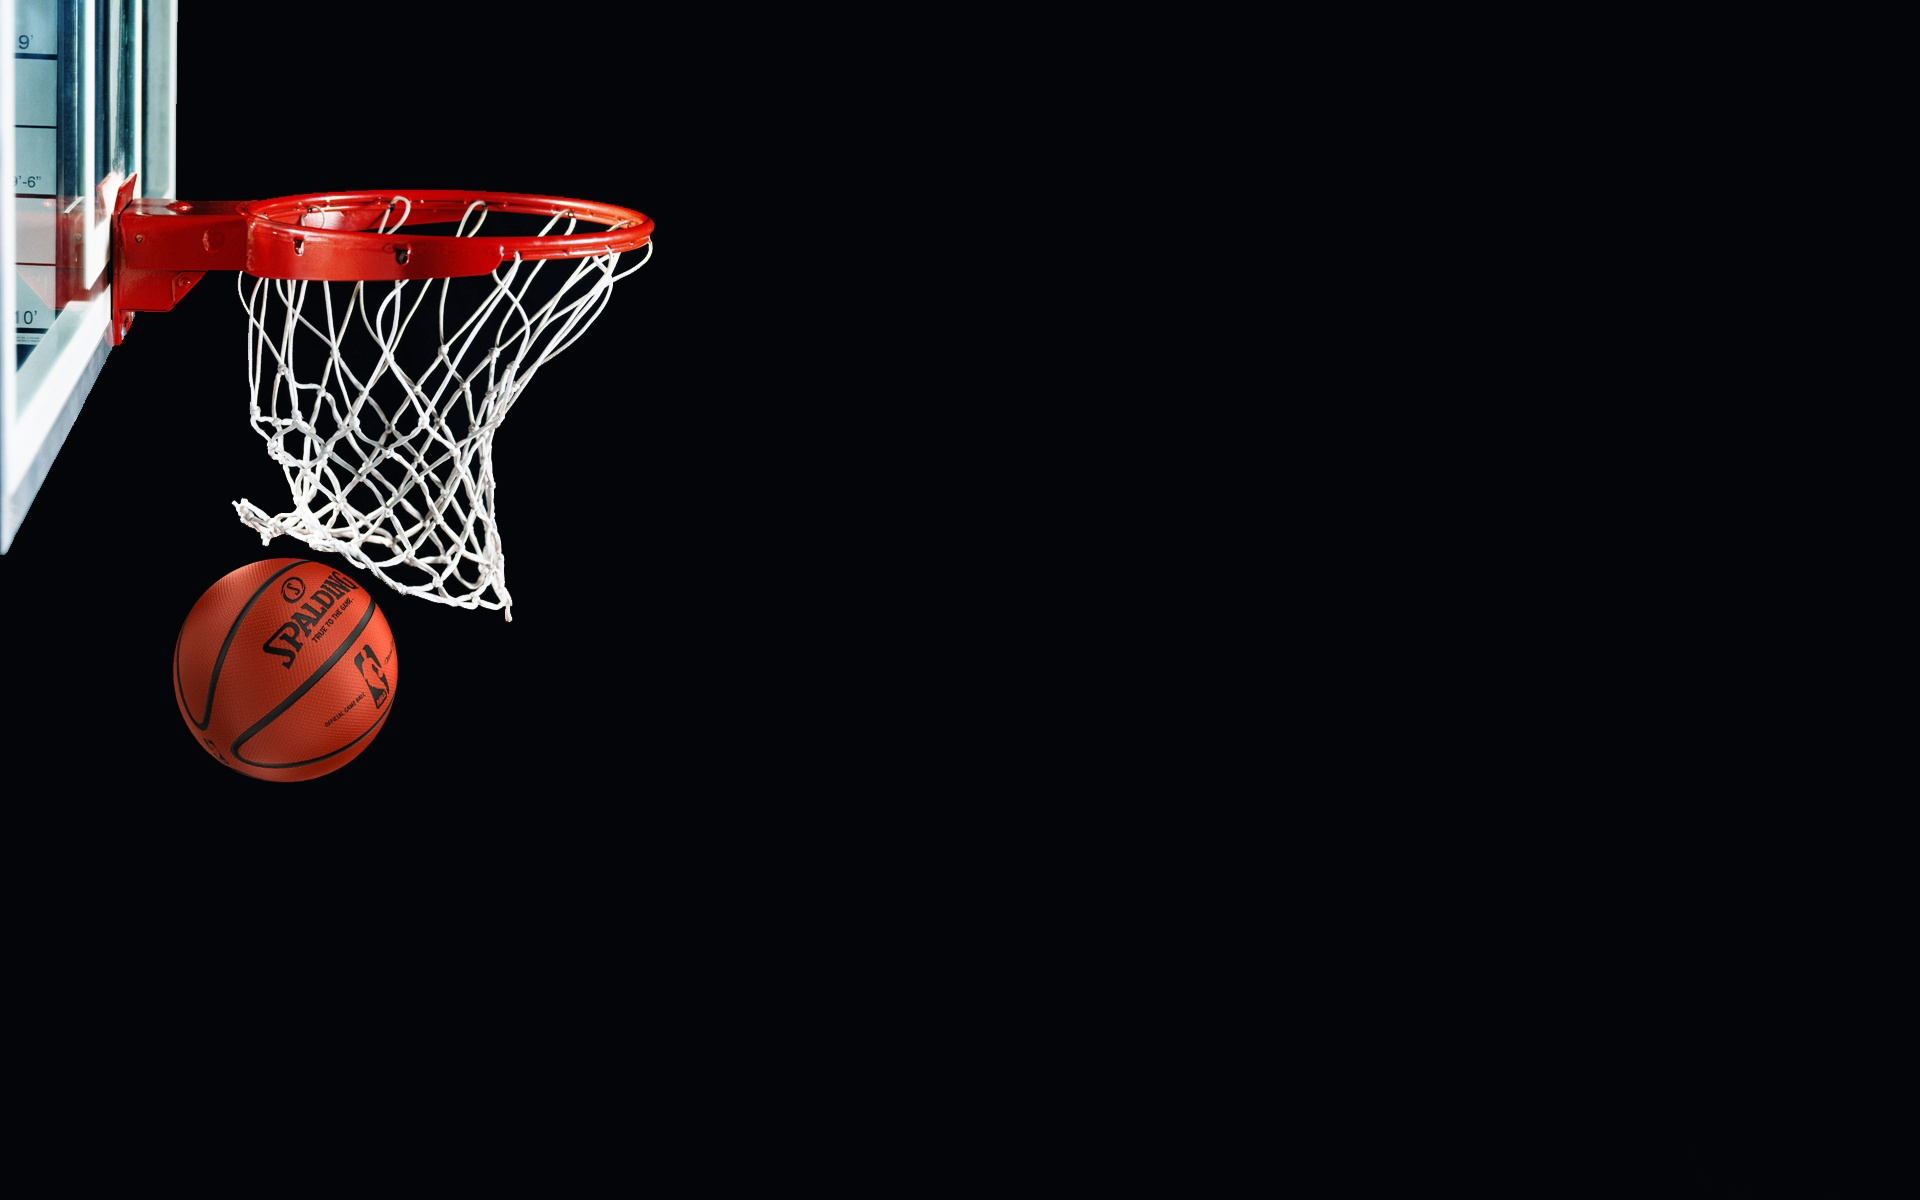 50+] NBA Wallpaper Desktop Basketball Wallpapers - WallpaperSafari